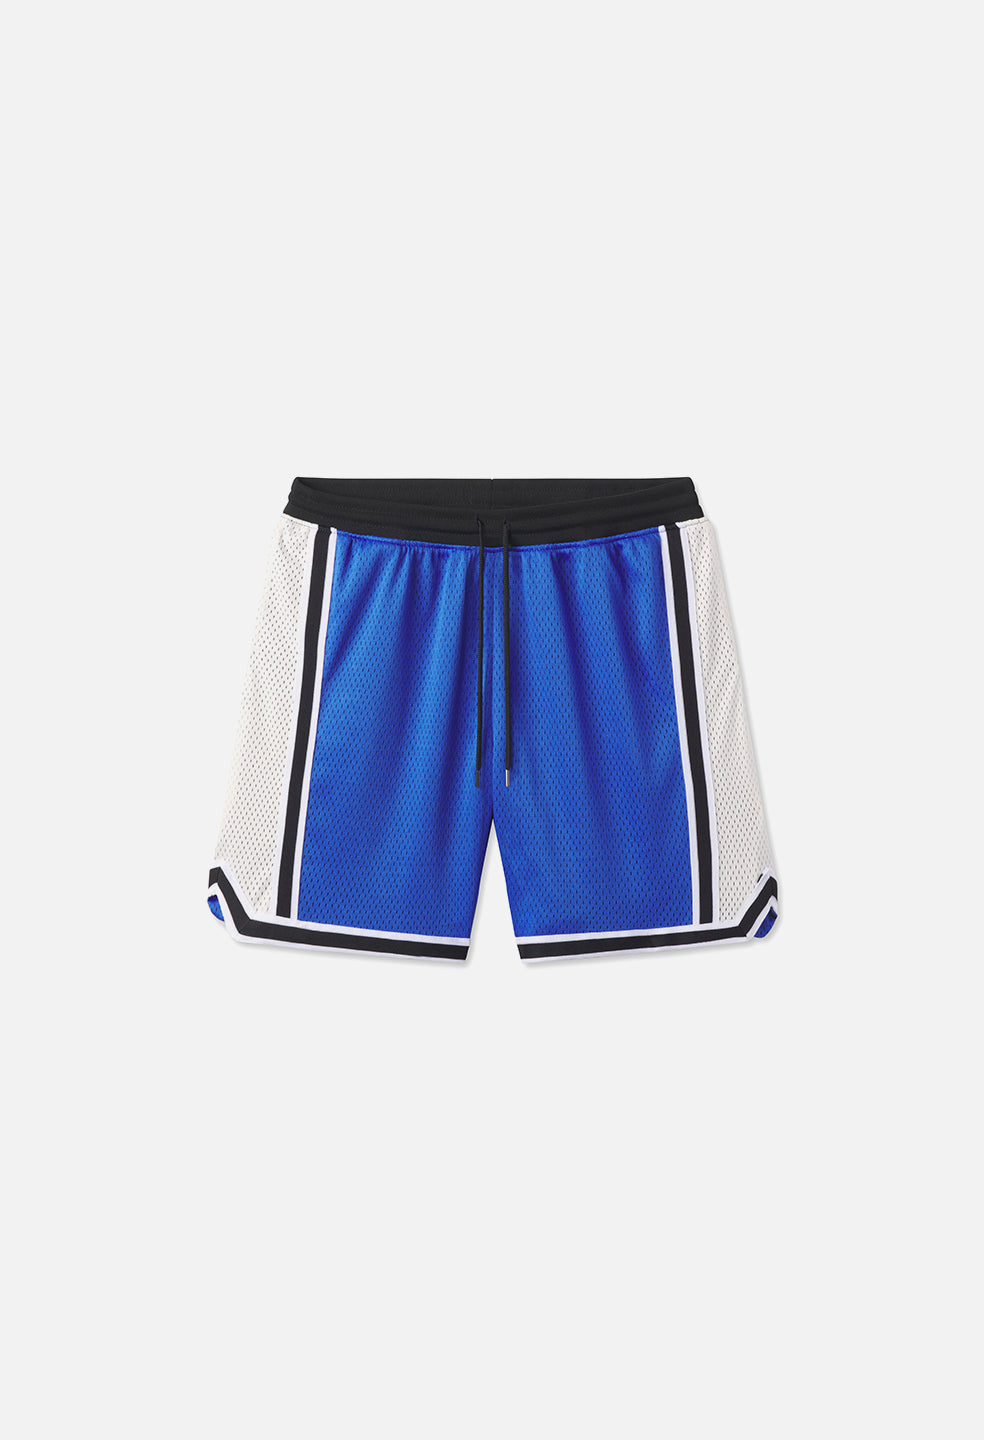 Vintage UofL Basketball Shorts